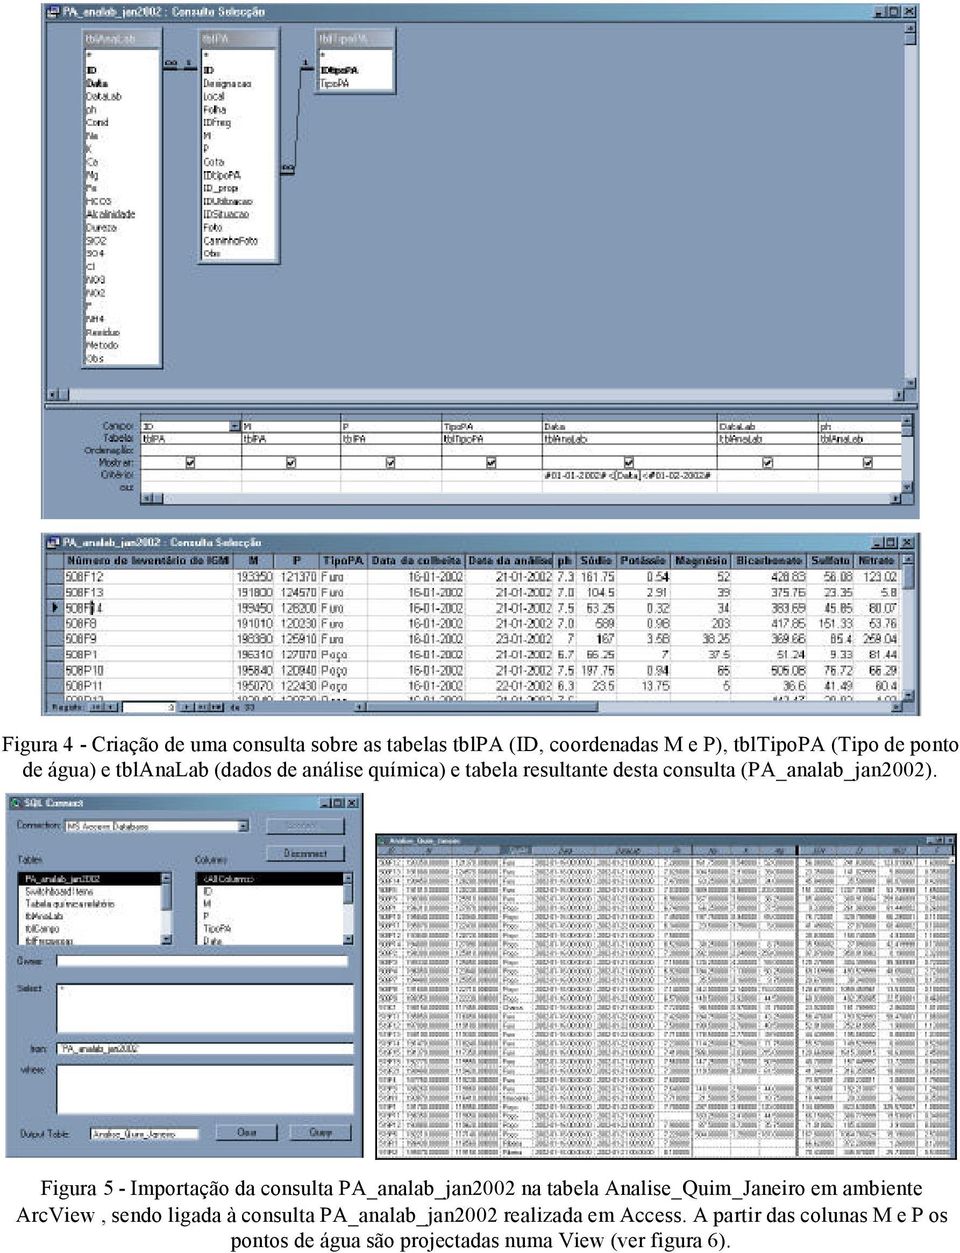 Figura 5 - Importação da consulta PA_analab_jan2002 na tabela Analise_Quim_Janeiro em ambiente ArcView, sendo ligada